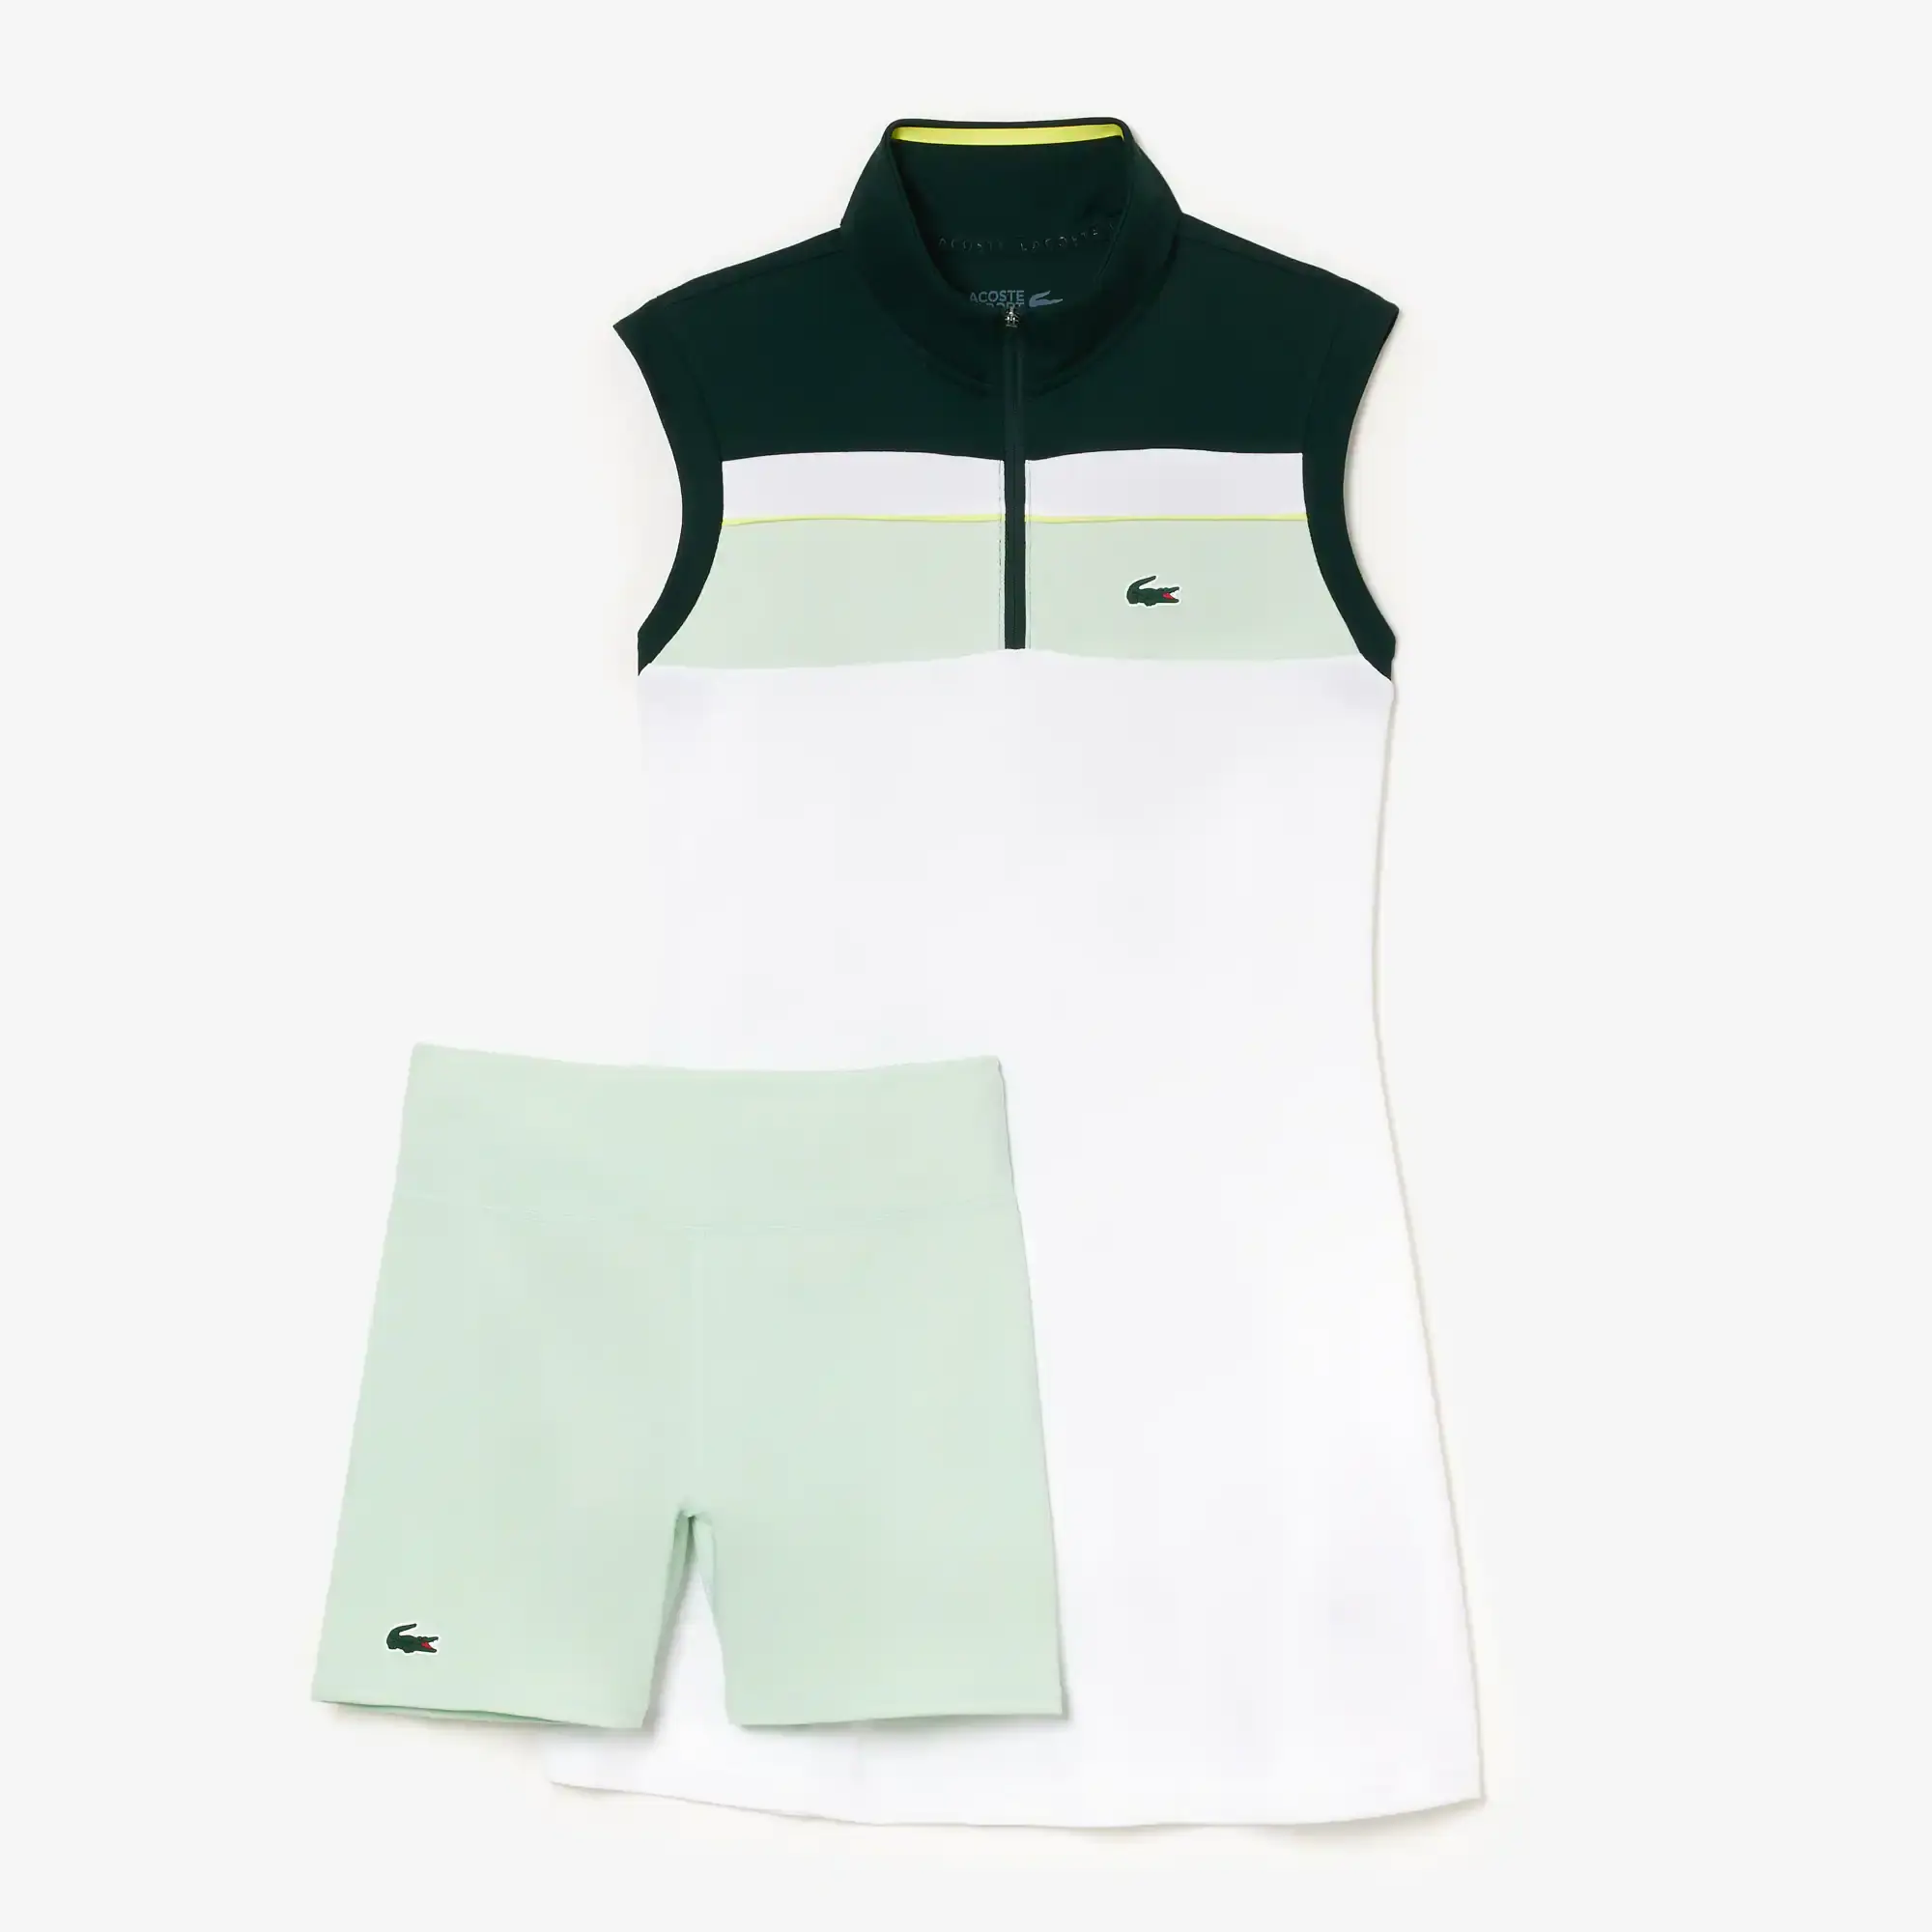 Lacoste Women's Tennis Dress. 1